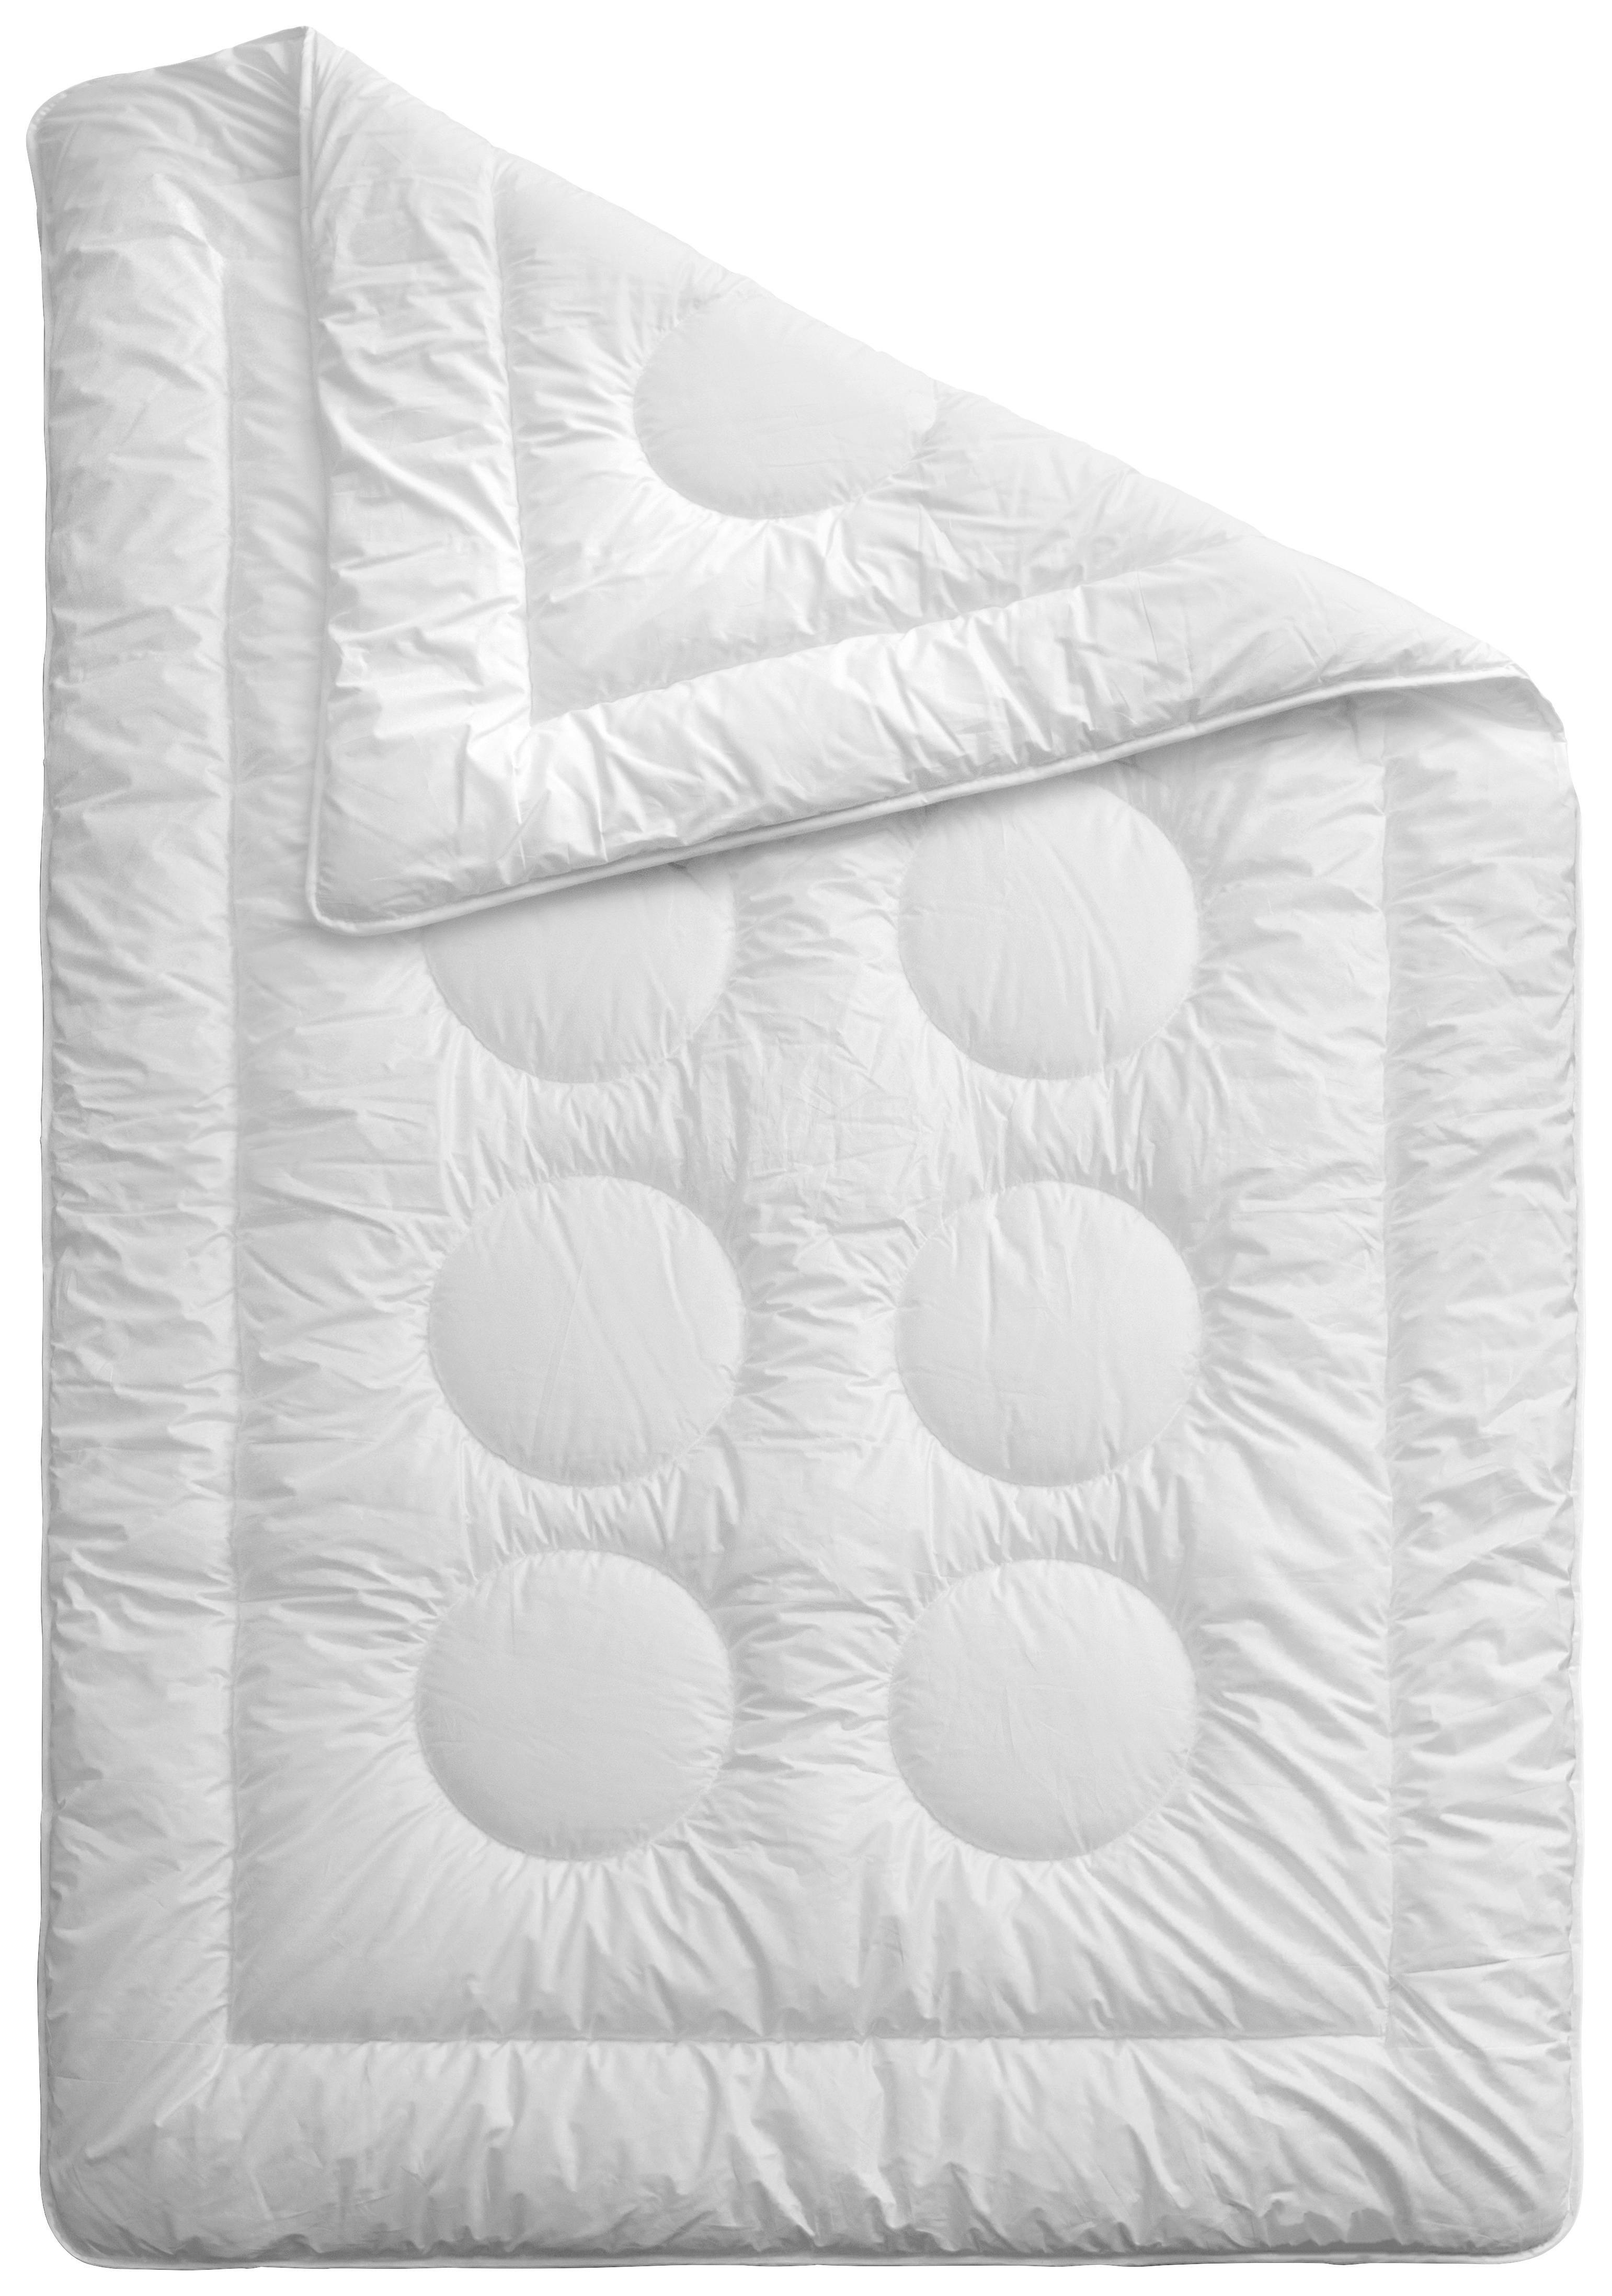 Zimní Přikrývka Dreamium - bílá, textil/plast (135-140/200cm) - Premium Living